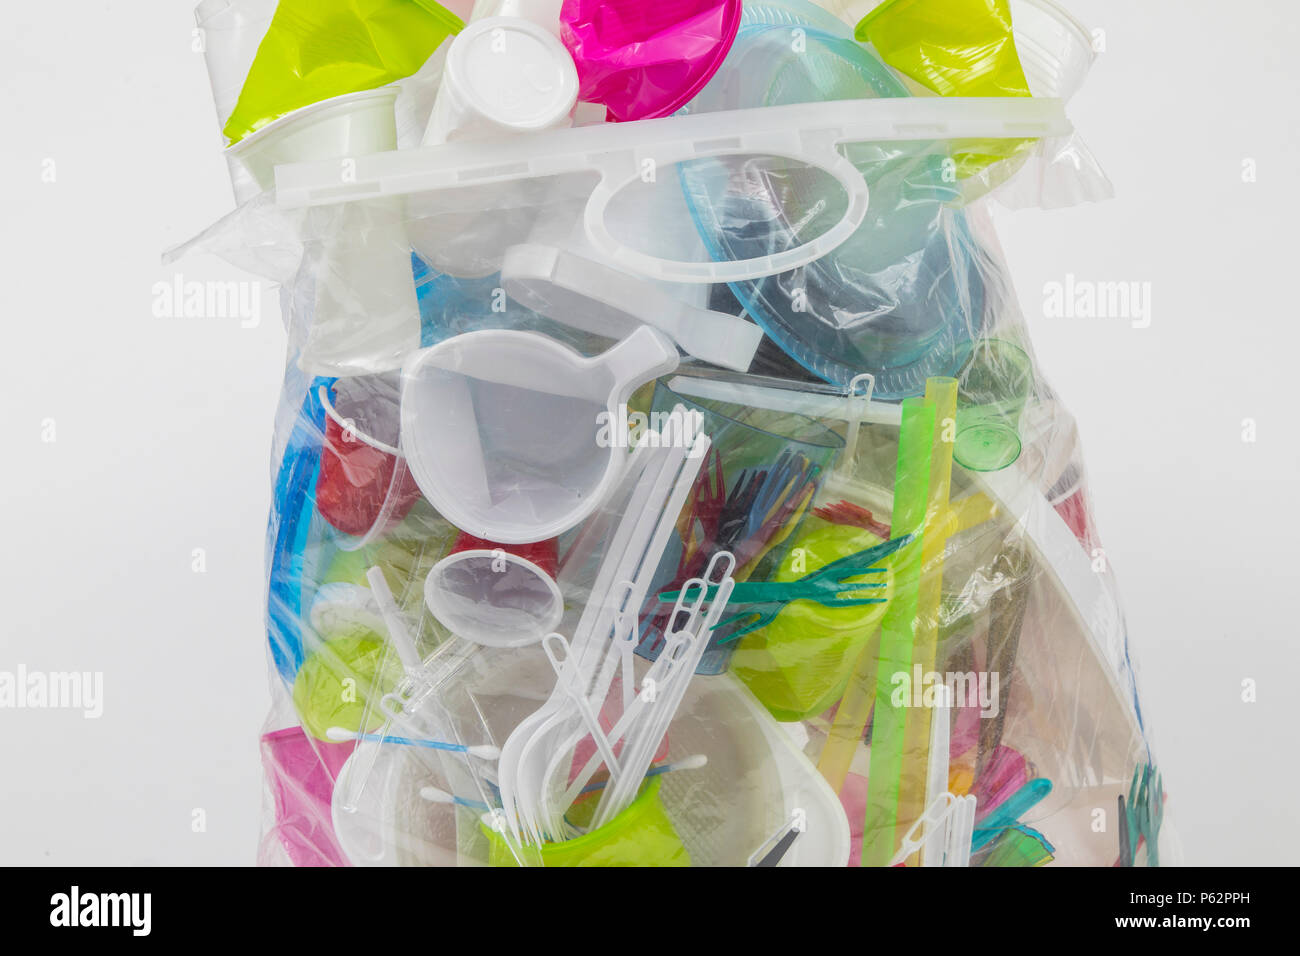 Sac poubelle rempli de vaisselle jetable, des ustensiles en plastique, verres en plastique, des sacs en plastique et autres déchets en plastique, de différentes couleurs, tailles et types Banque D'Images